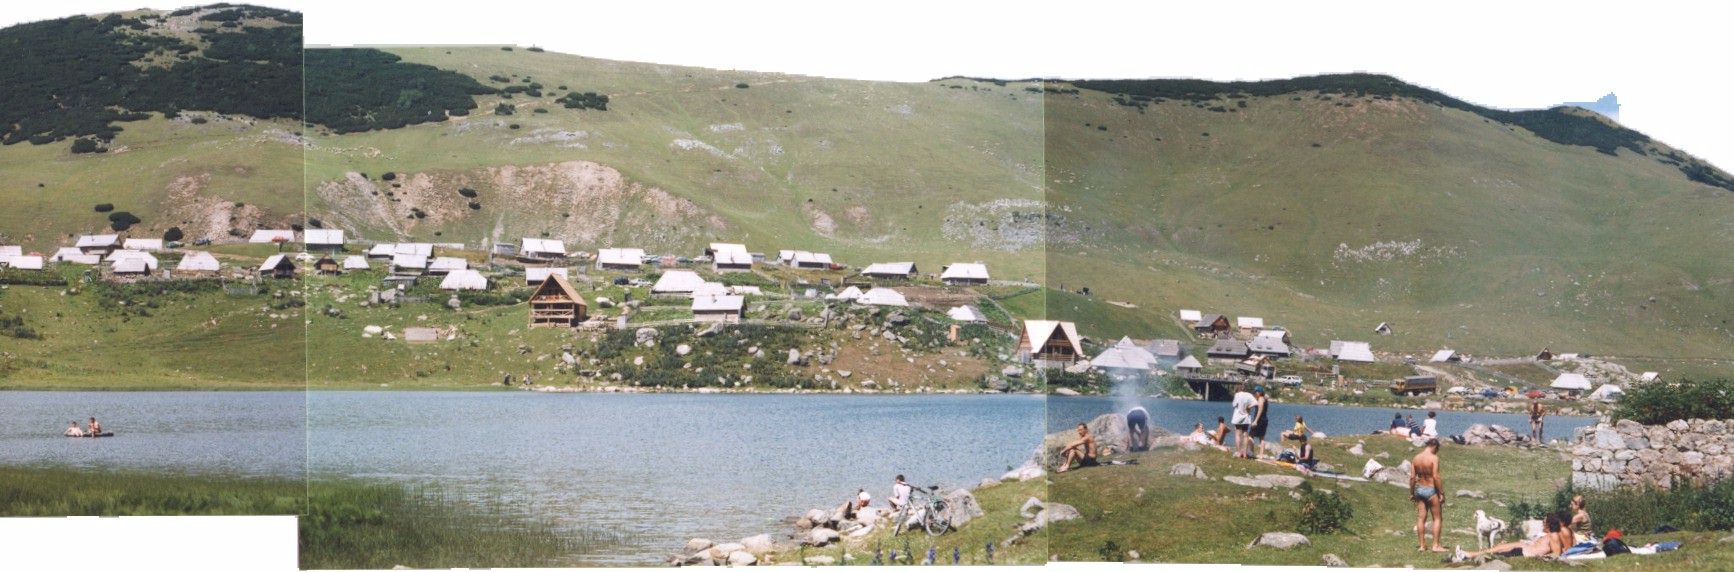 Desni dio fotografija jezera